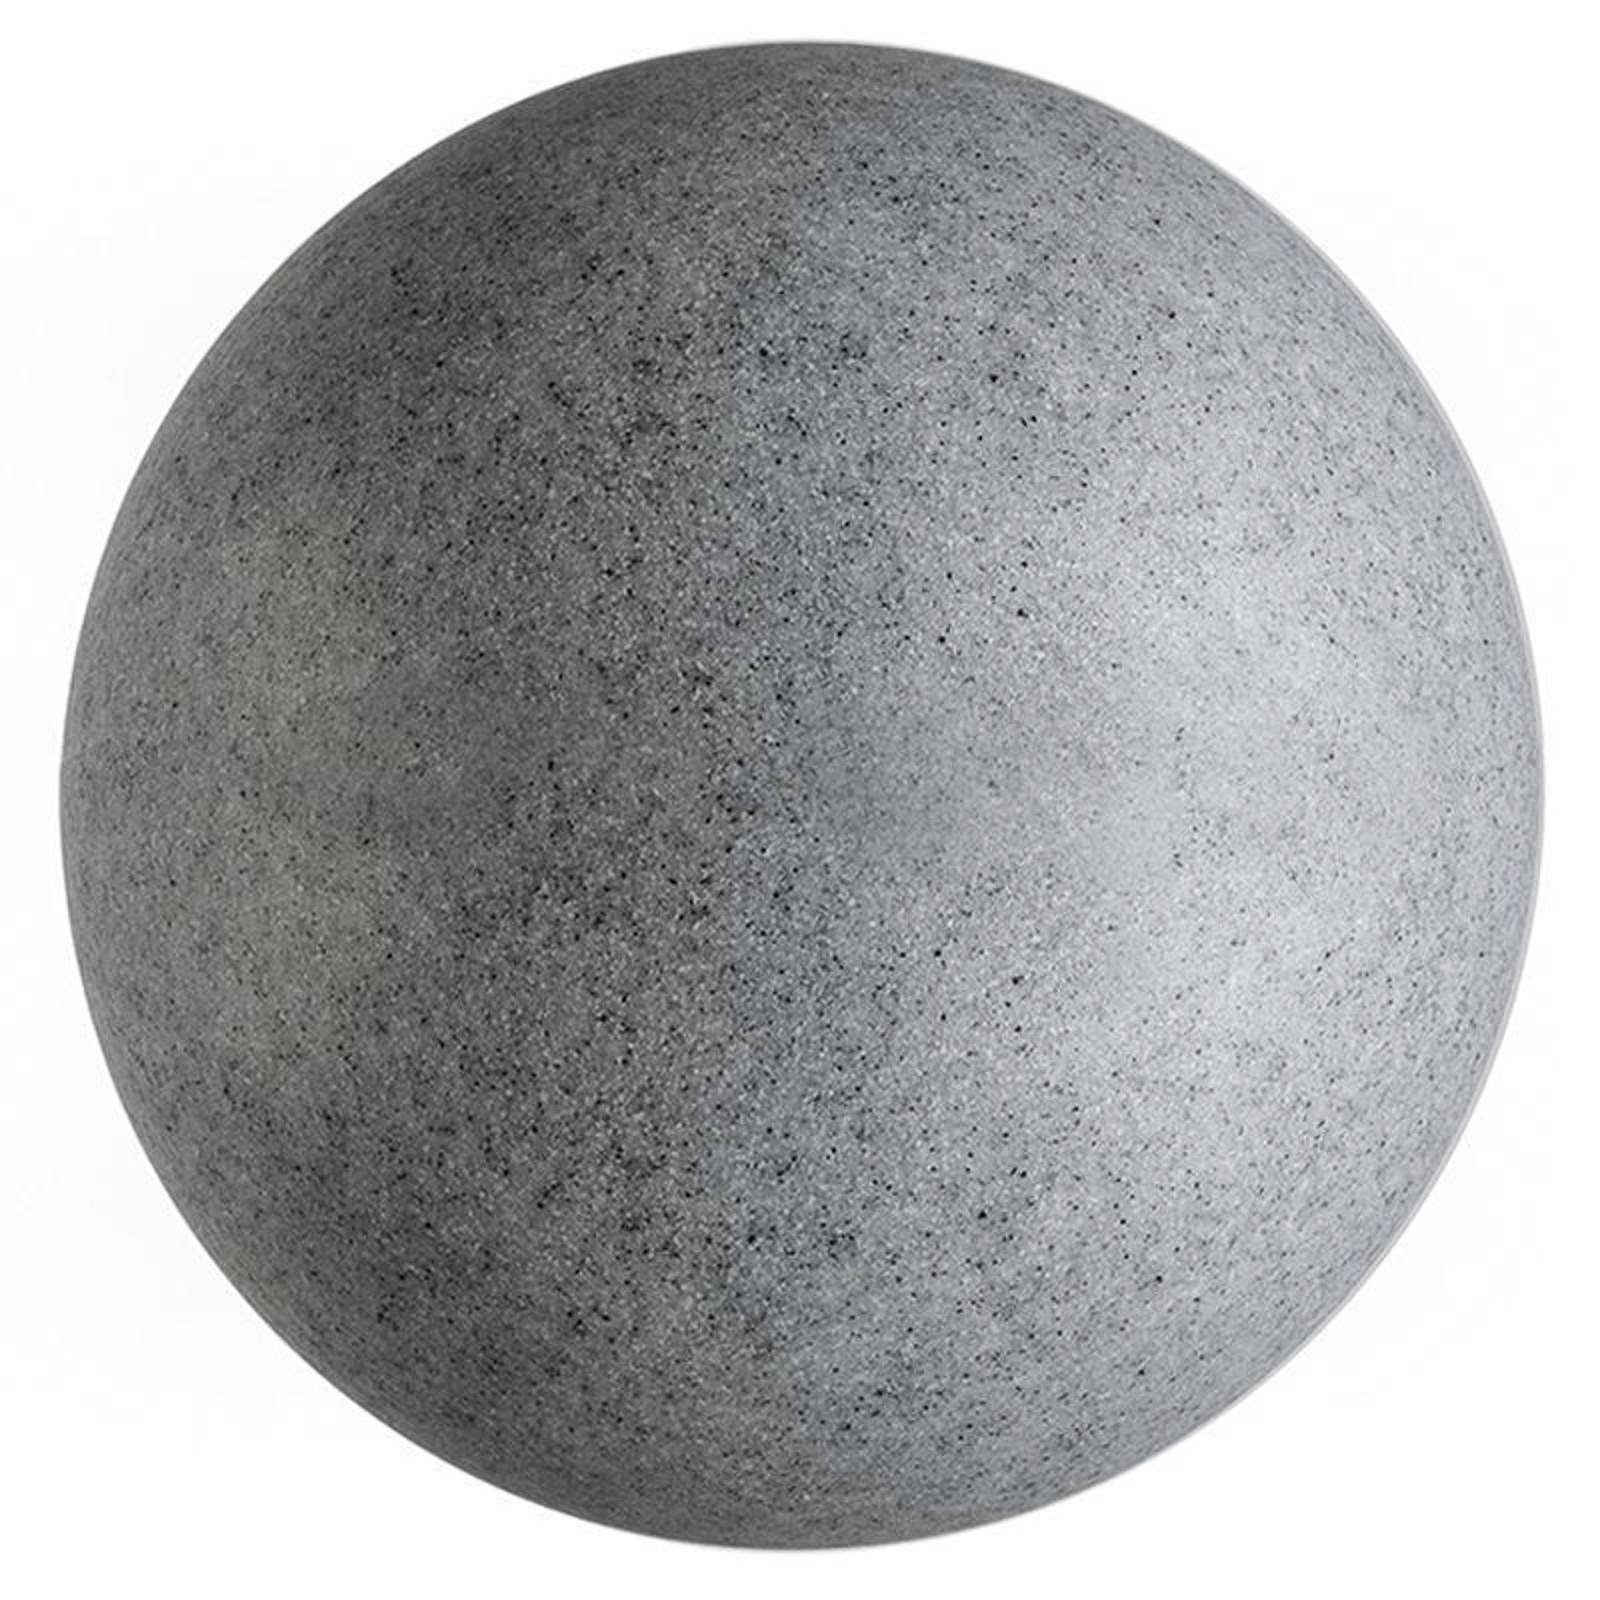 Kültéri gömblámpa földbe sz., gránit, Ø 56 cm